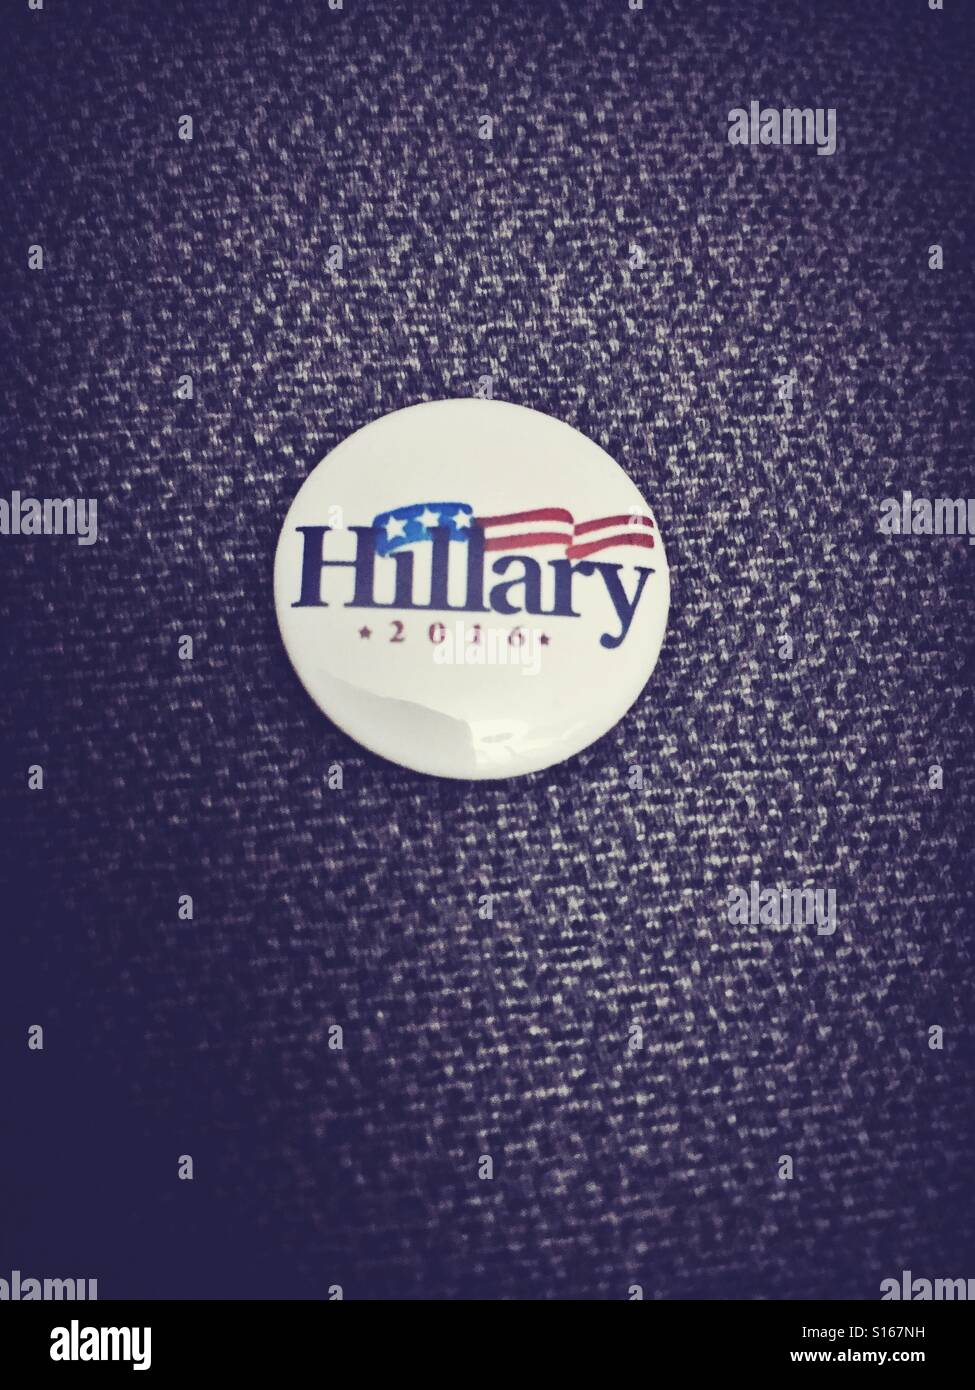 Hillary Clinton 2016 campagne présidentielle de badge Banque D'Images